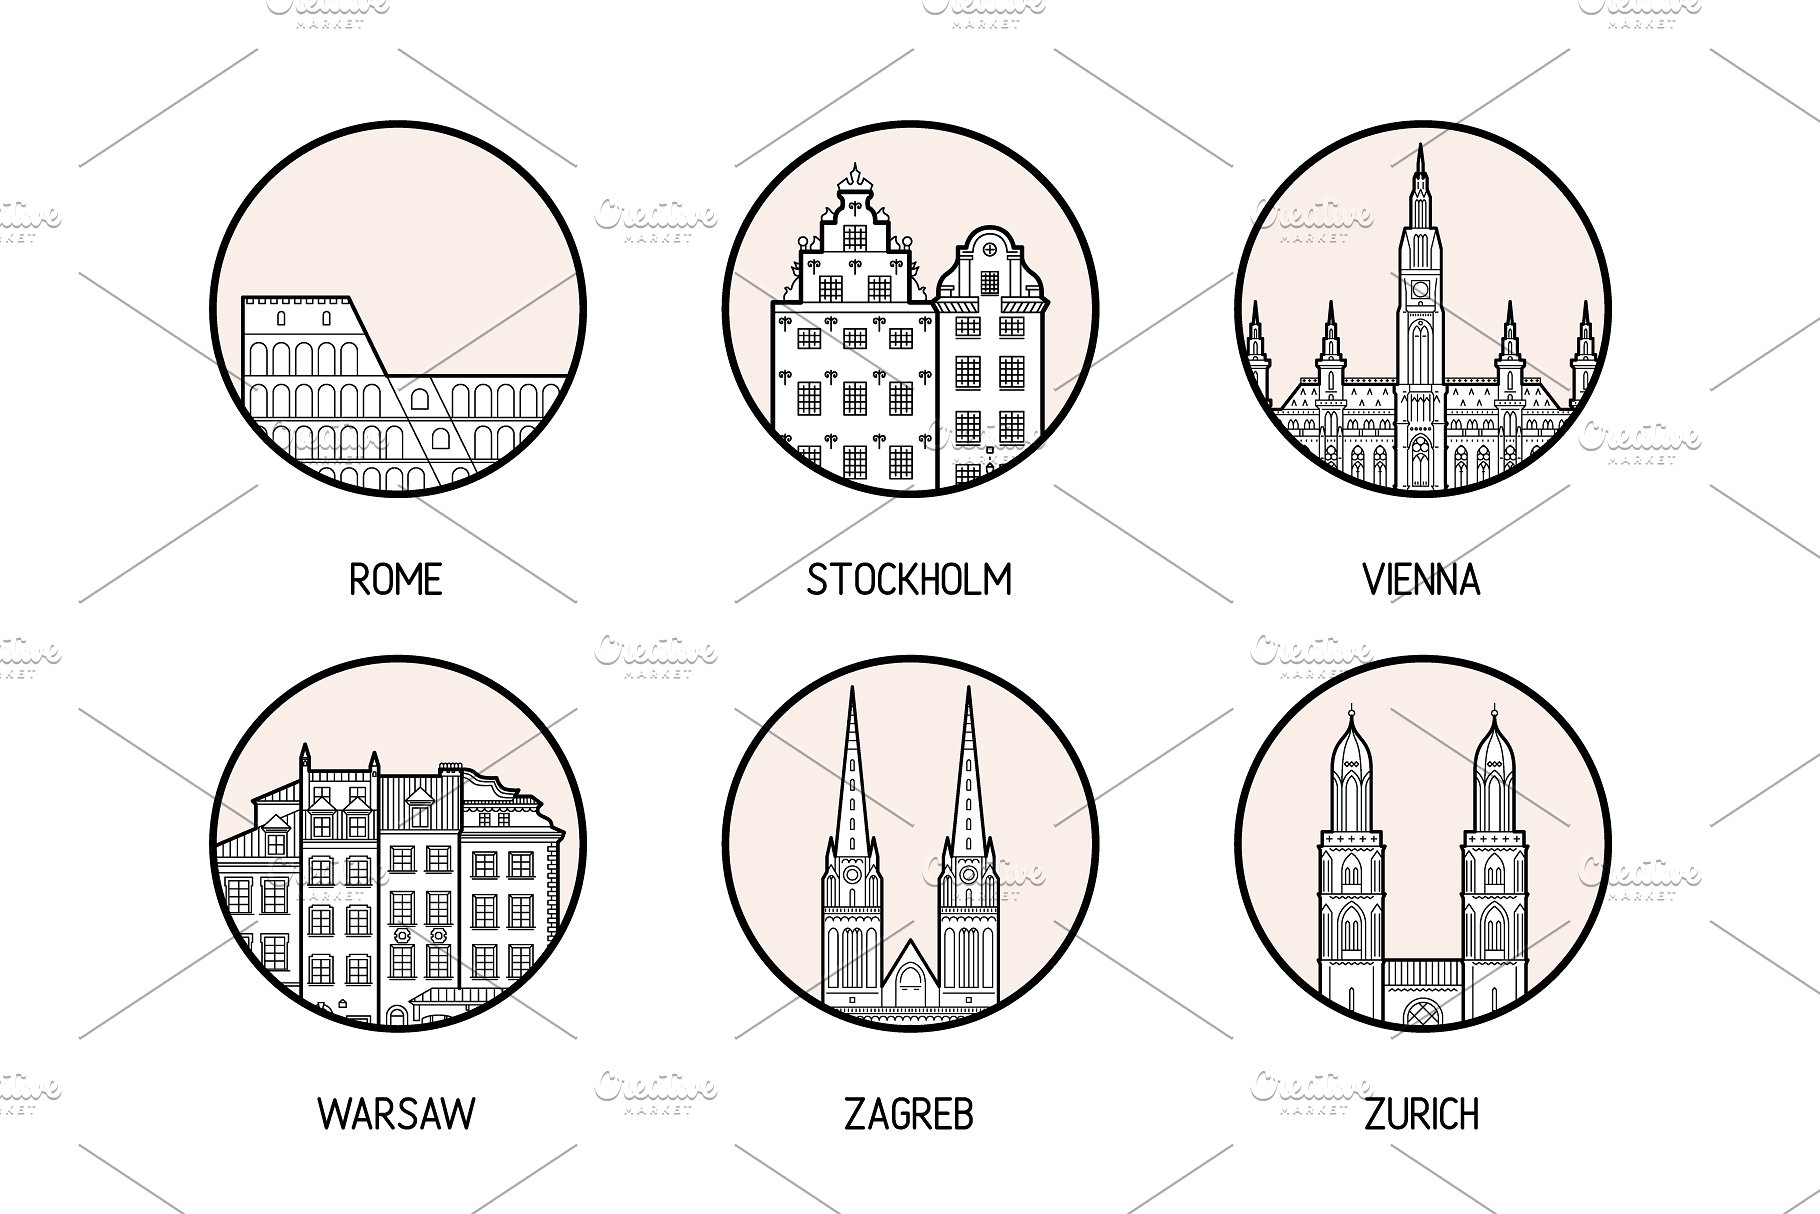 30个欧洲城市的徽章图标集合 Icons of 30 European cities插图(6)